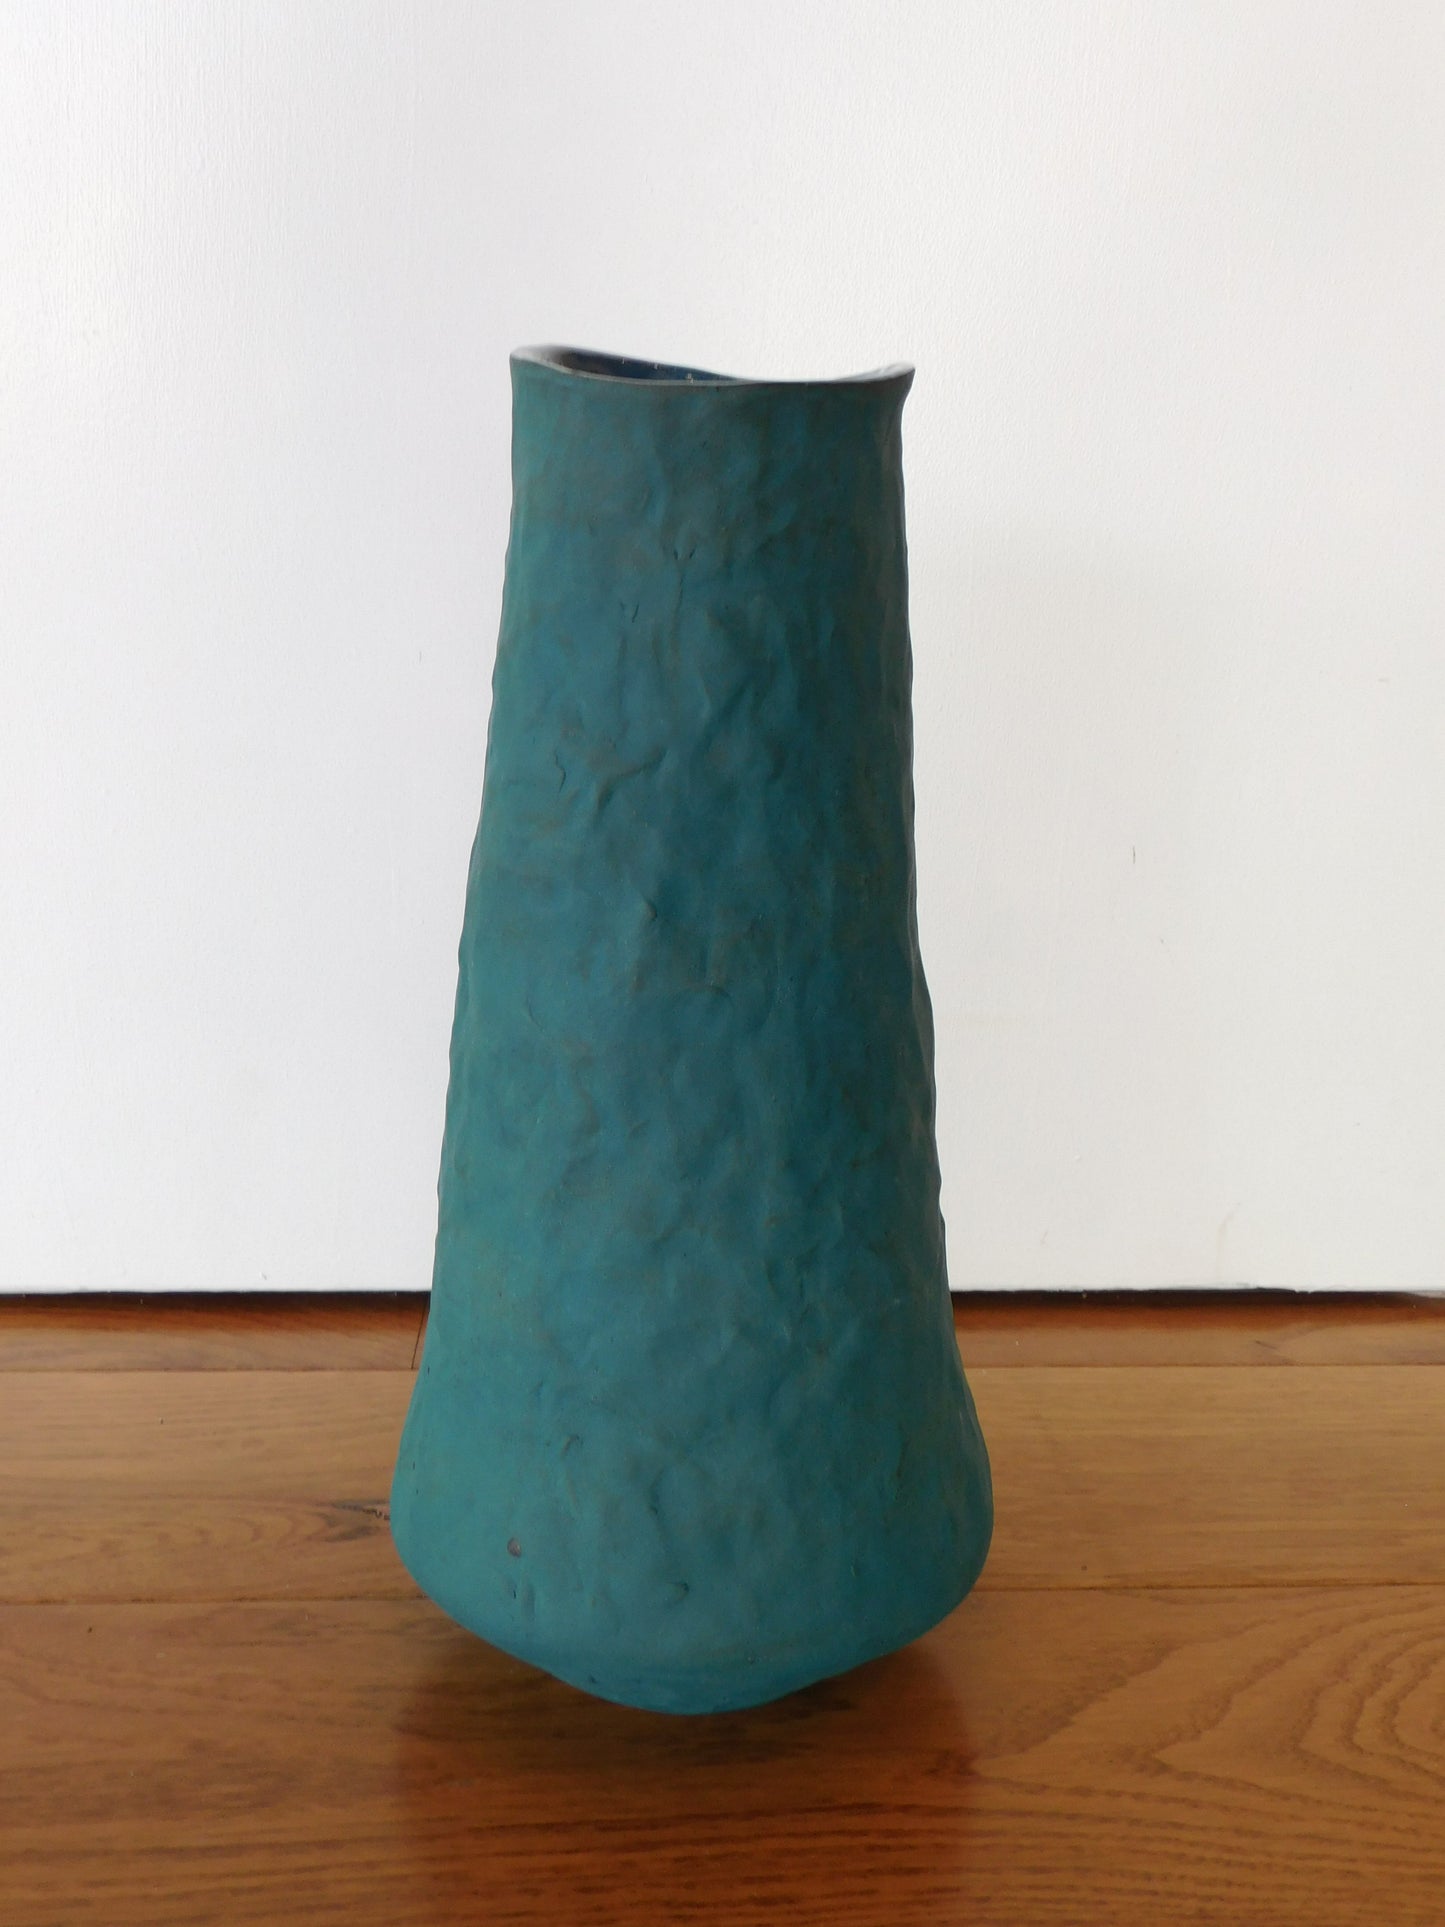 Maya Rumsey - Teal Hand-Built Vase